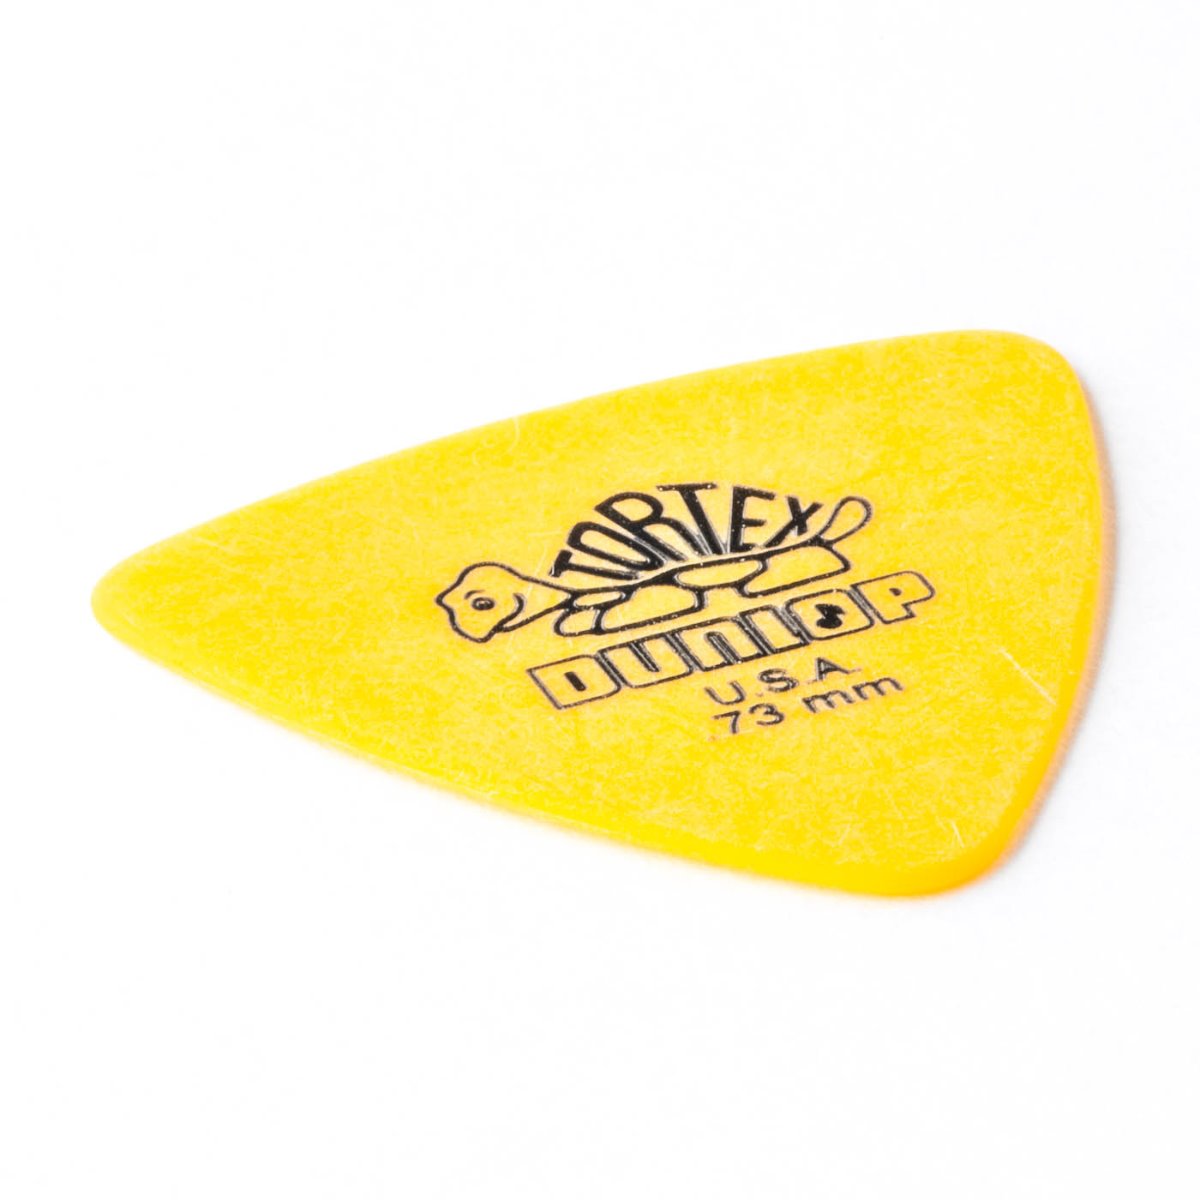 Jim Dunlop Tortex Triangle Guitar Picks 0.73mm Bulk 72 Pack